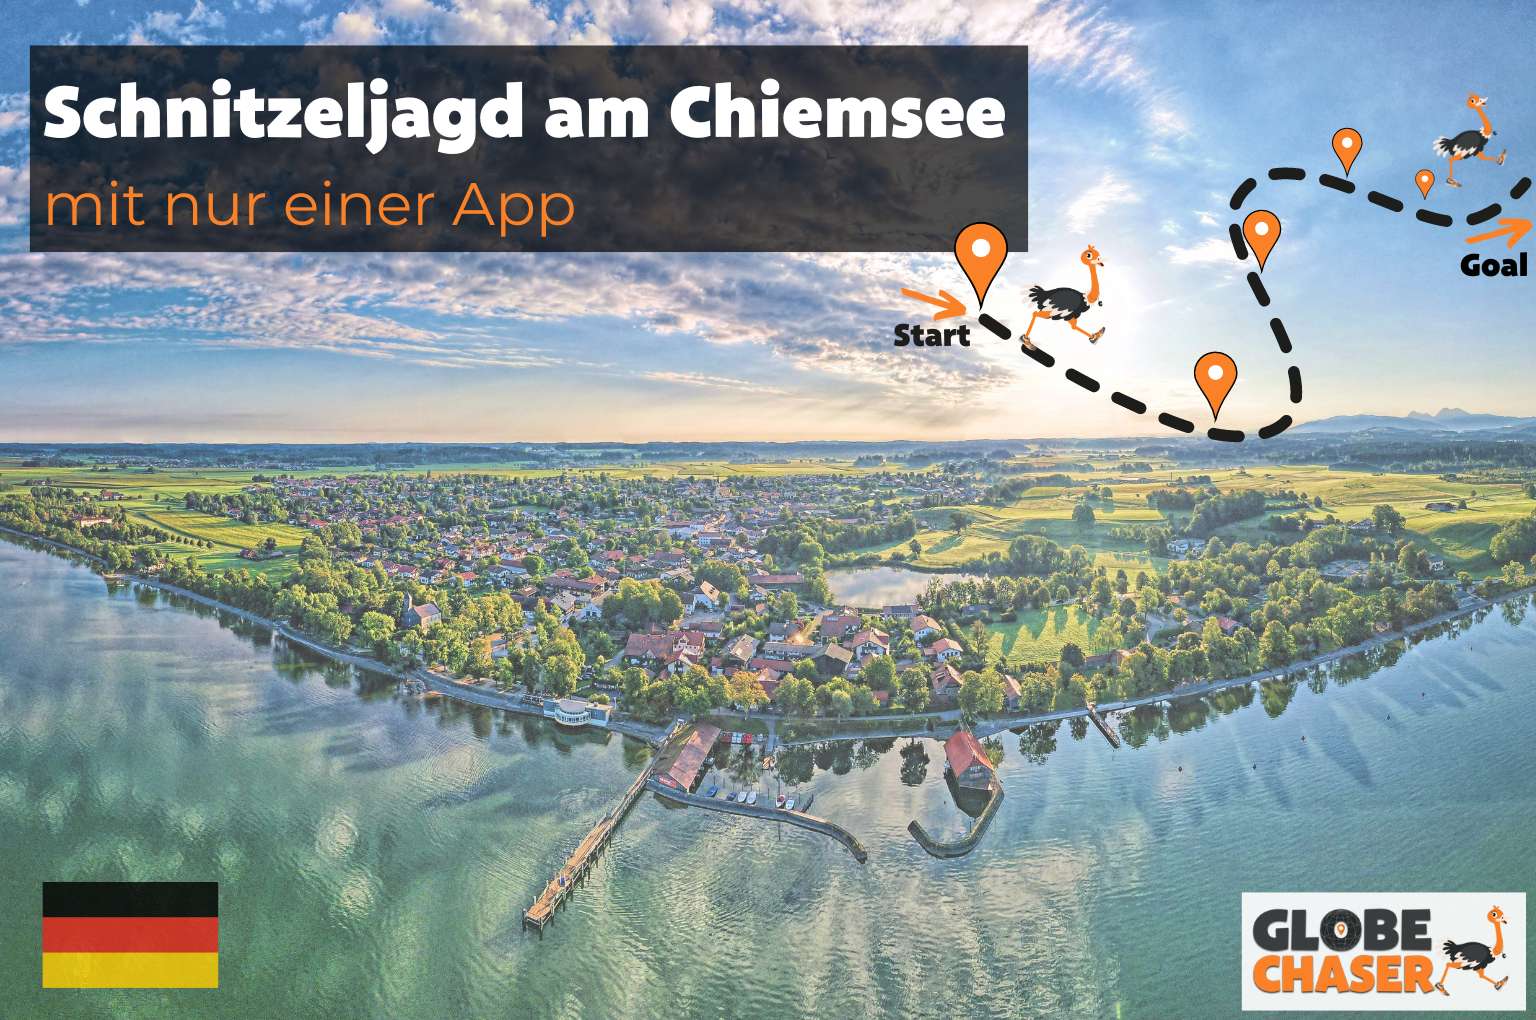 Schnitzeljagd am Chiemsee mit App - Globe Chaser Erlebnisse Deutschland